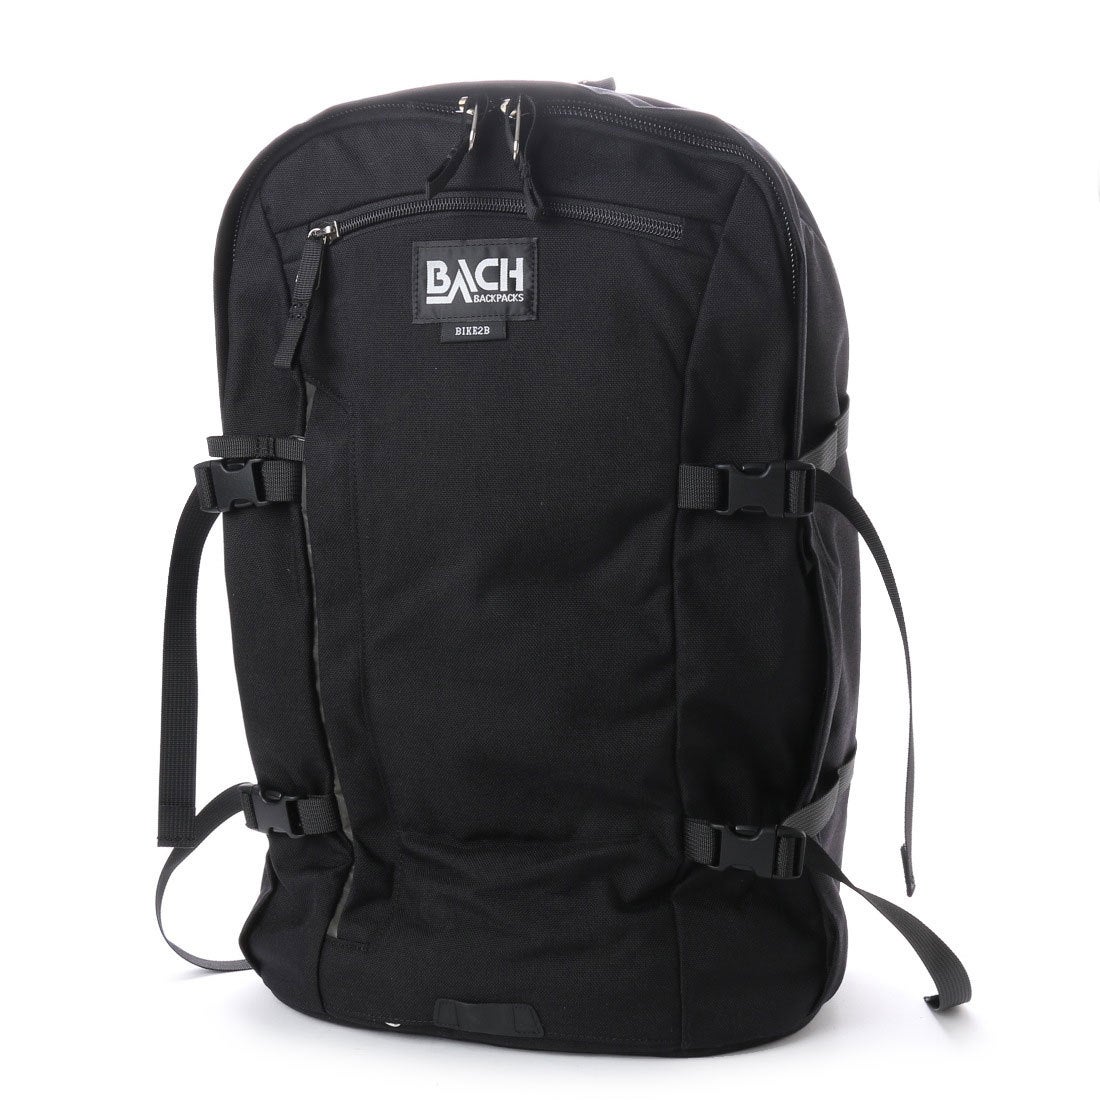 BACH Backpacks BIKE2B